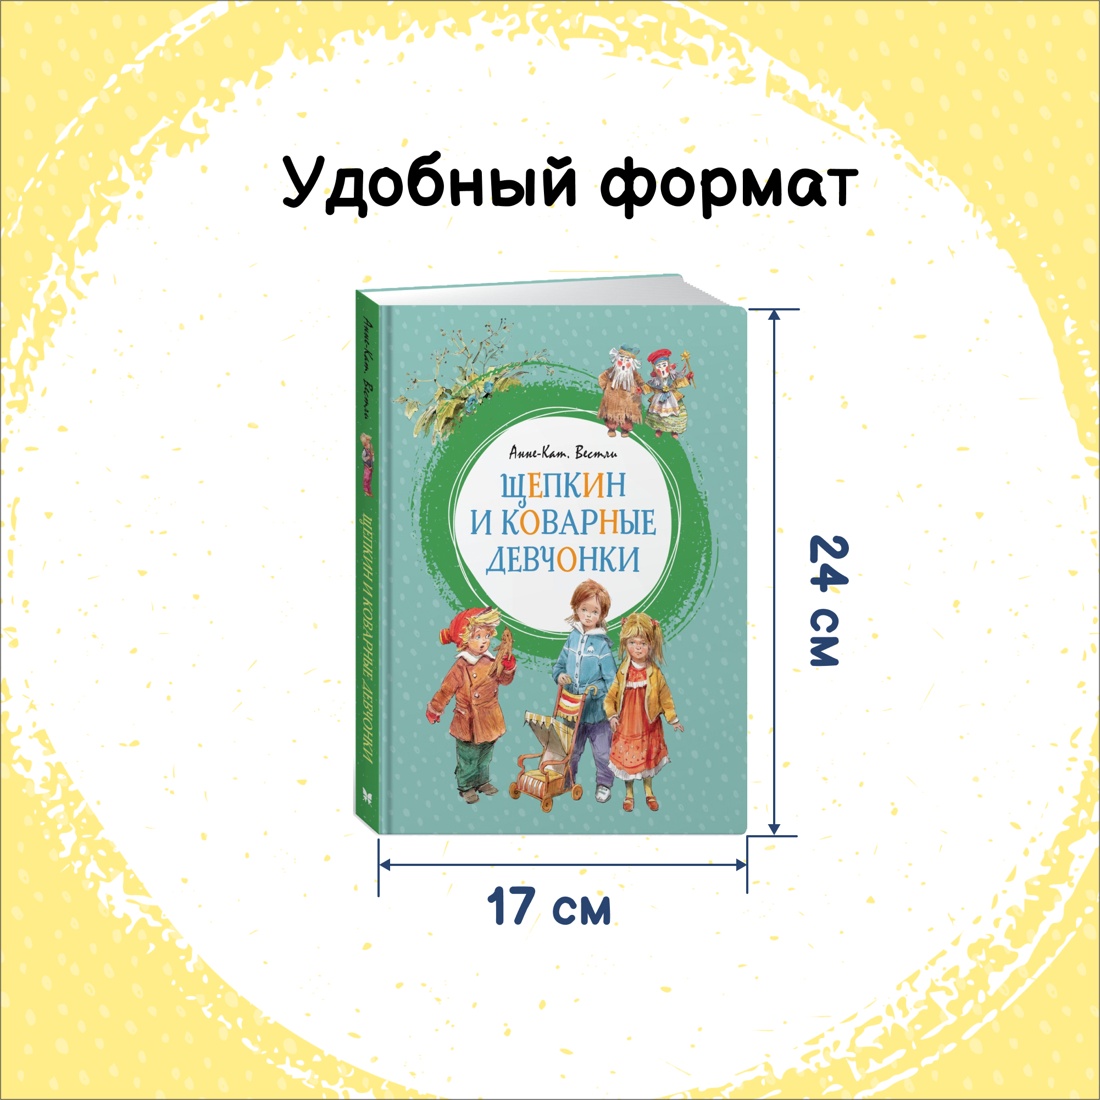 Промо материал к книге "Щепкин и коварные девчонки" №1